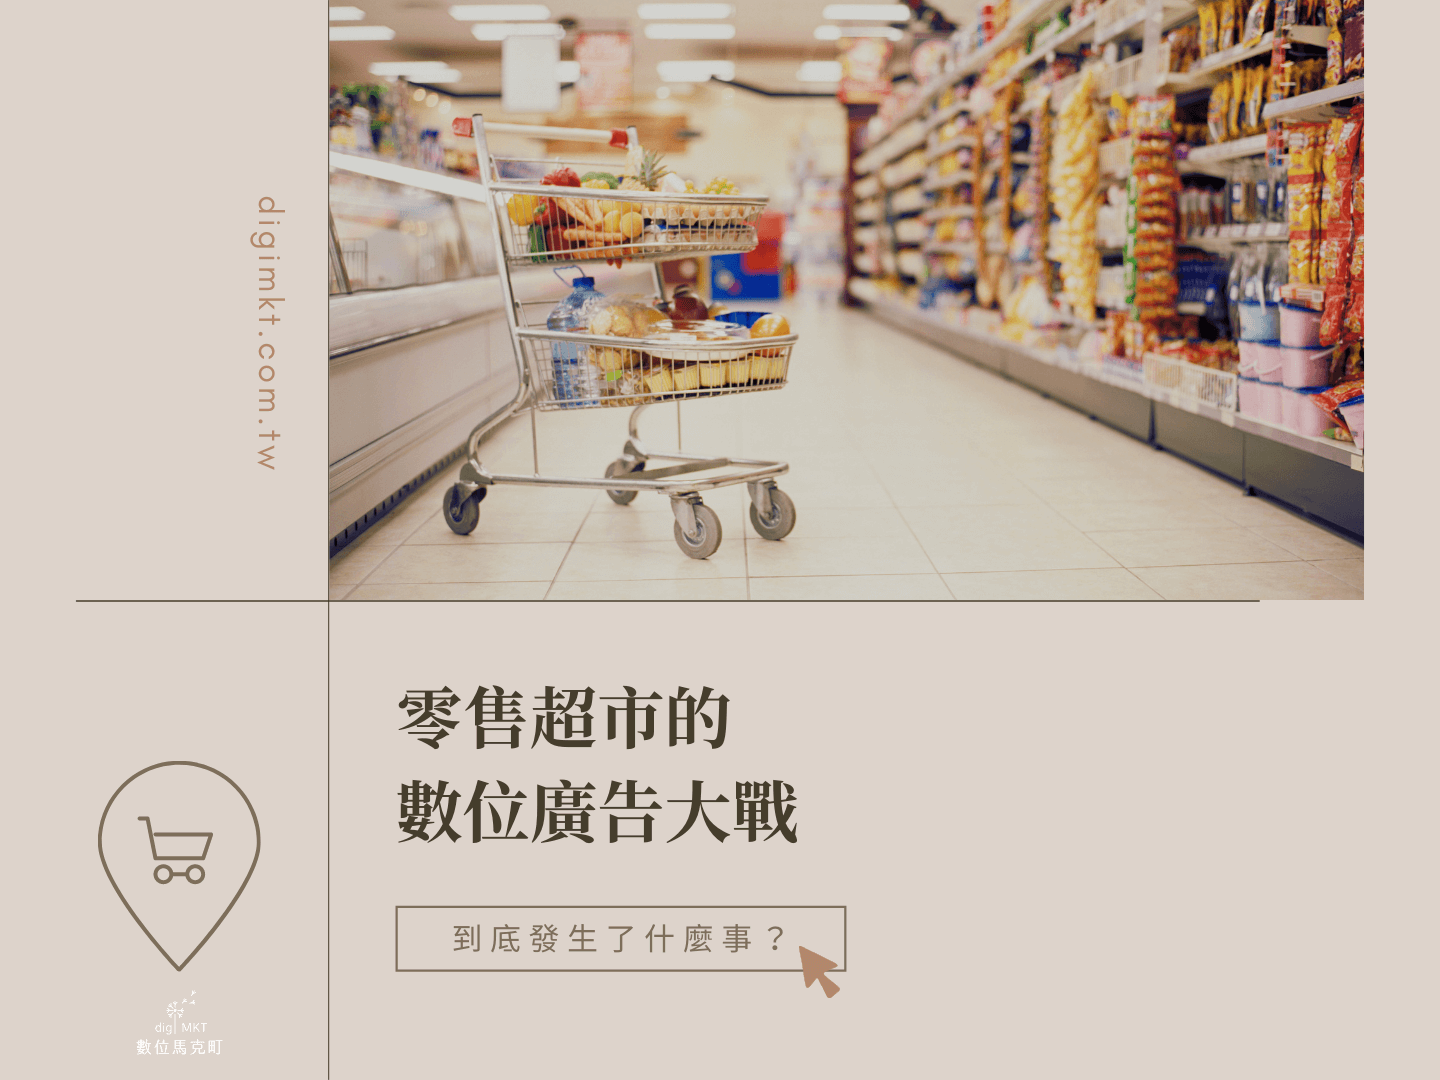 超市-家樂福-amazon-數位廣告